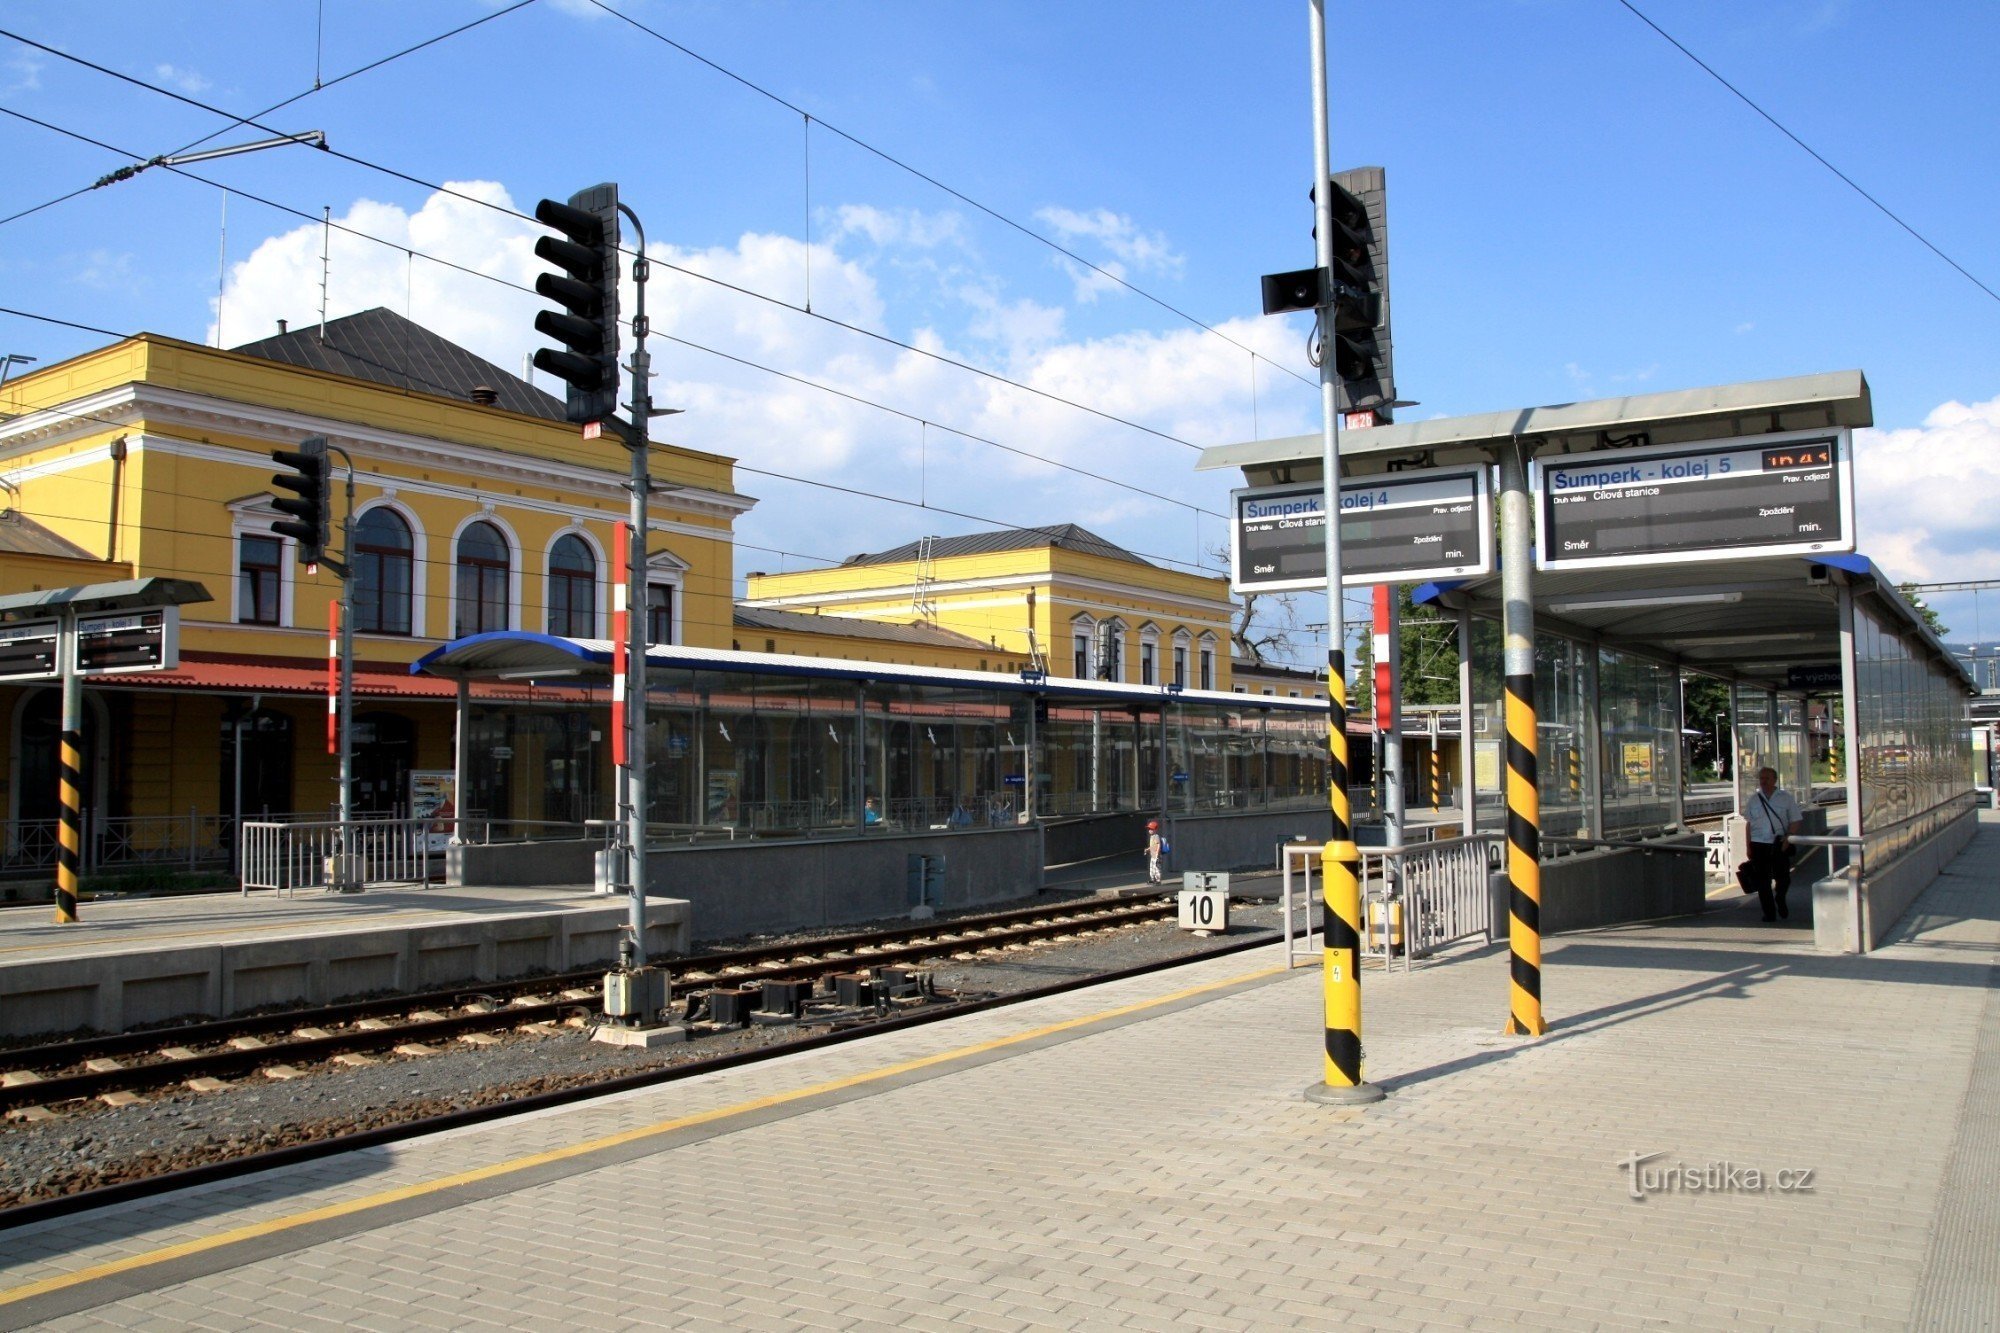 Шумперк - железнодорожная станция